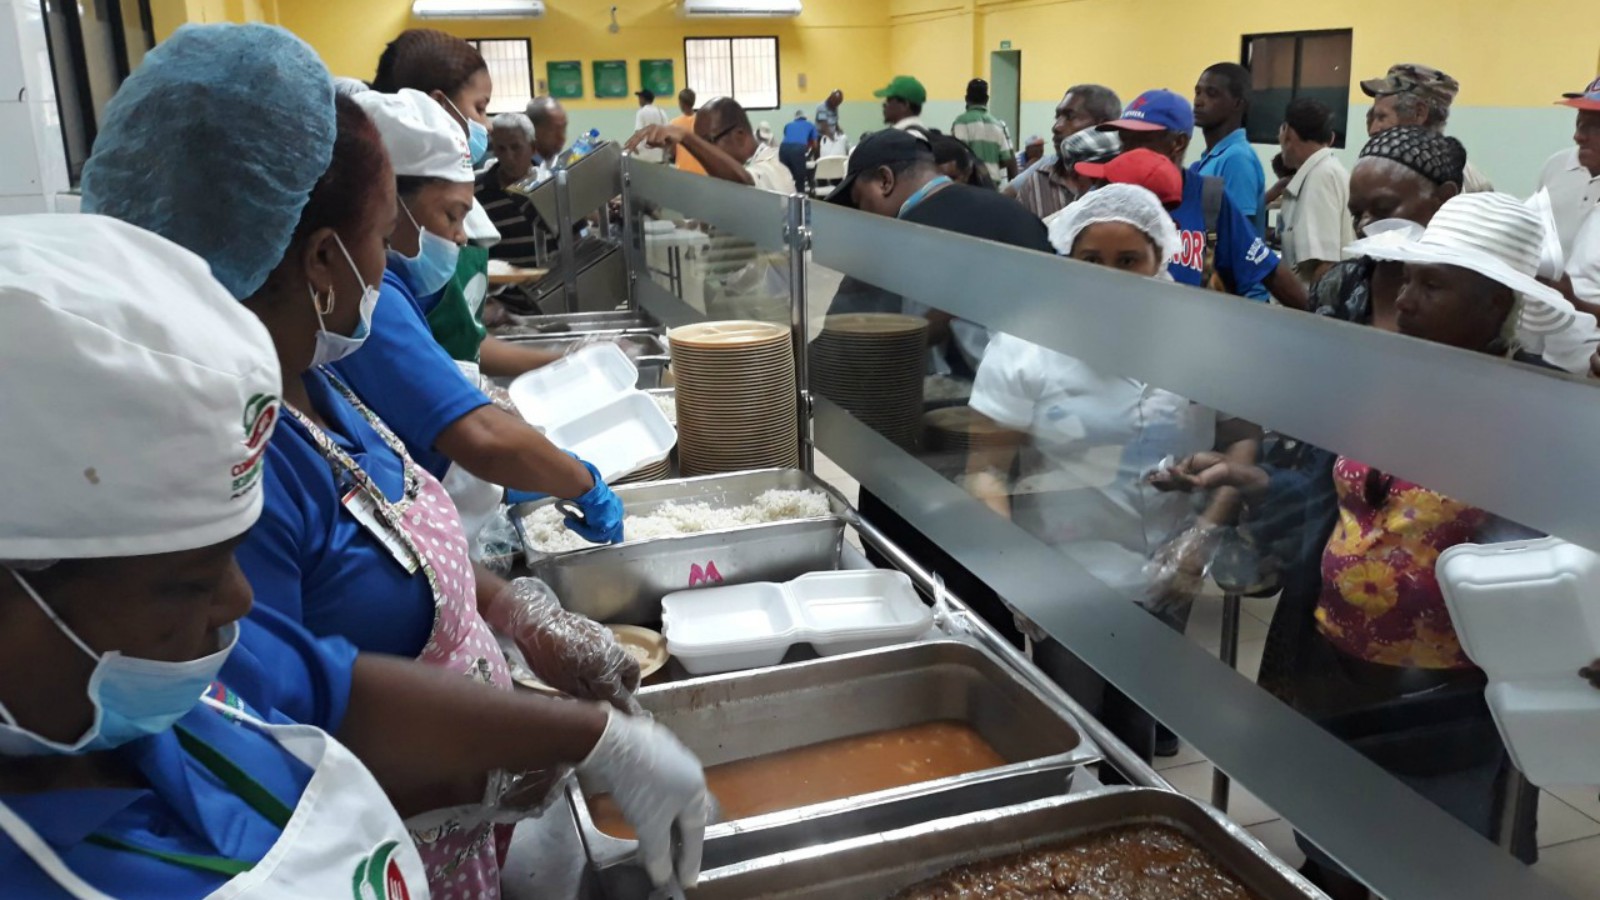 REPÚBLICA DOMINICANA: En víspera Día Mundial de la Alimentación: Gobierno garantiza alimentos de calidad en Comedores Económicos